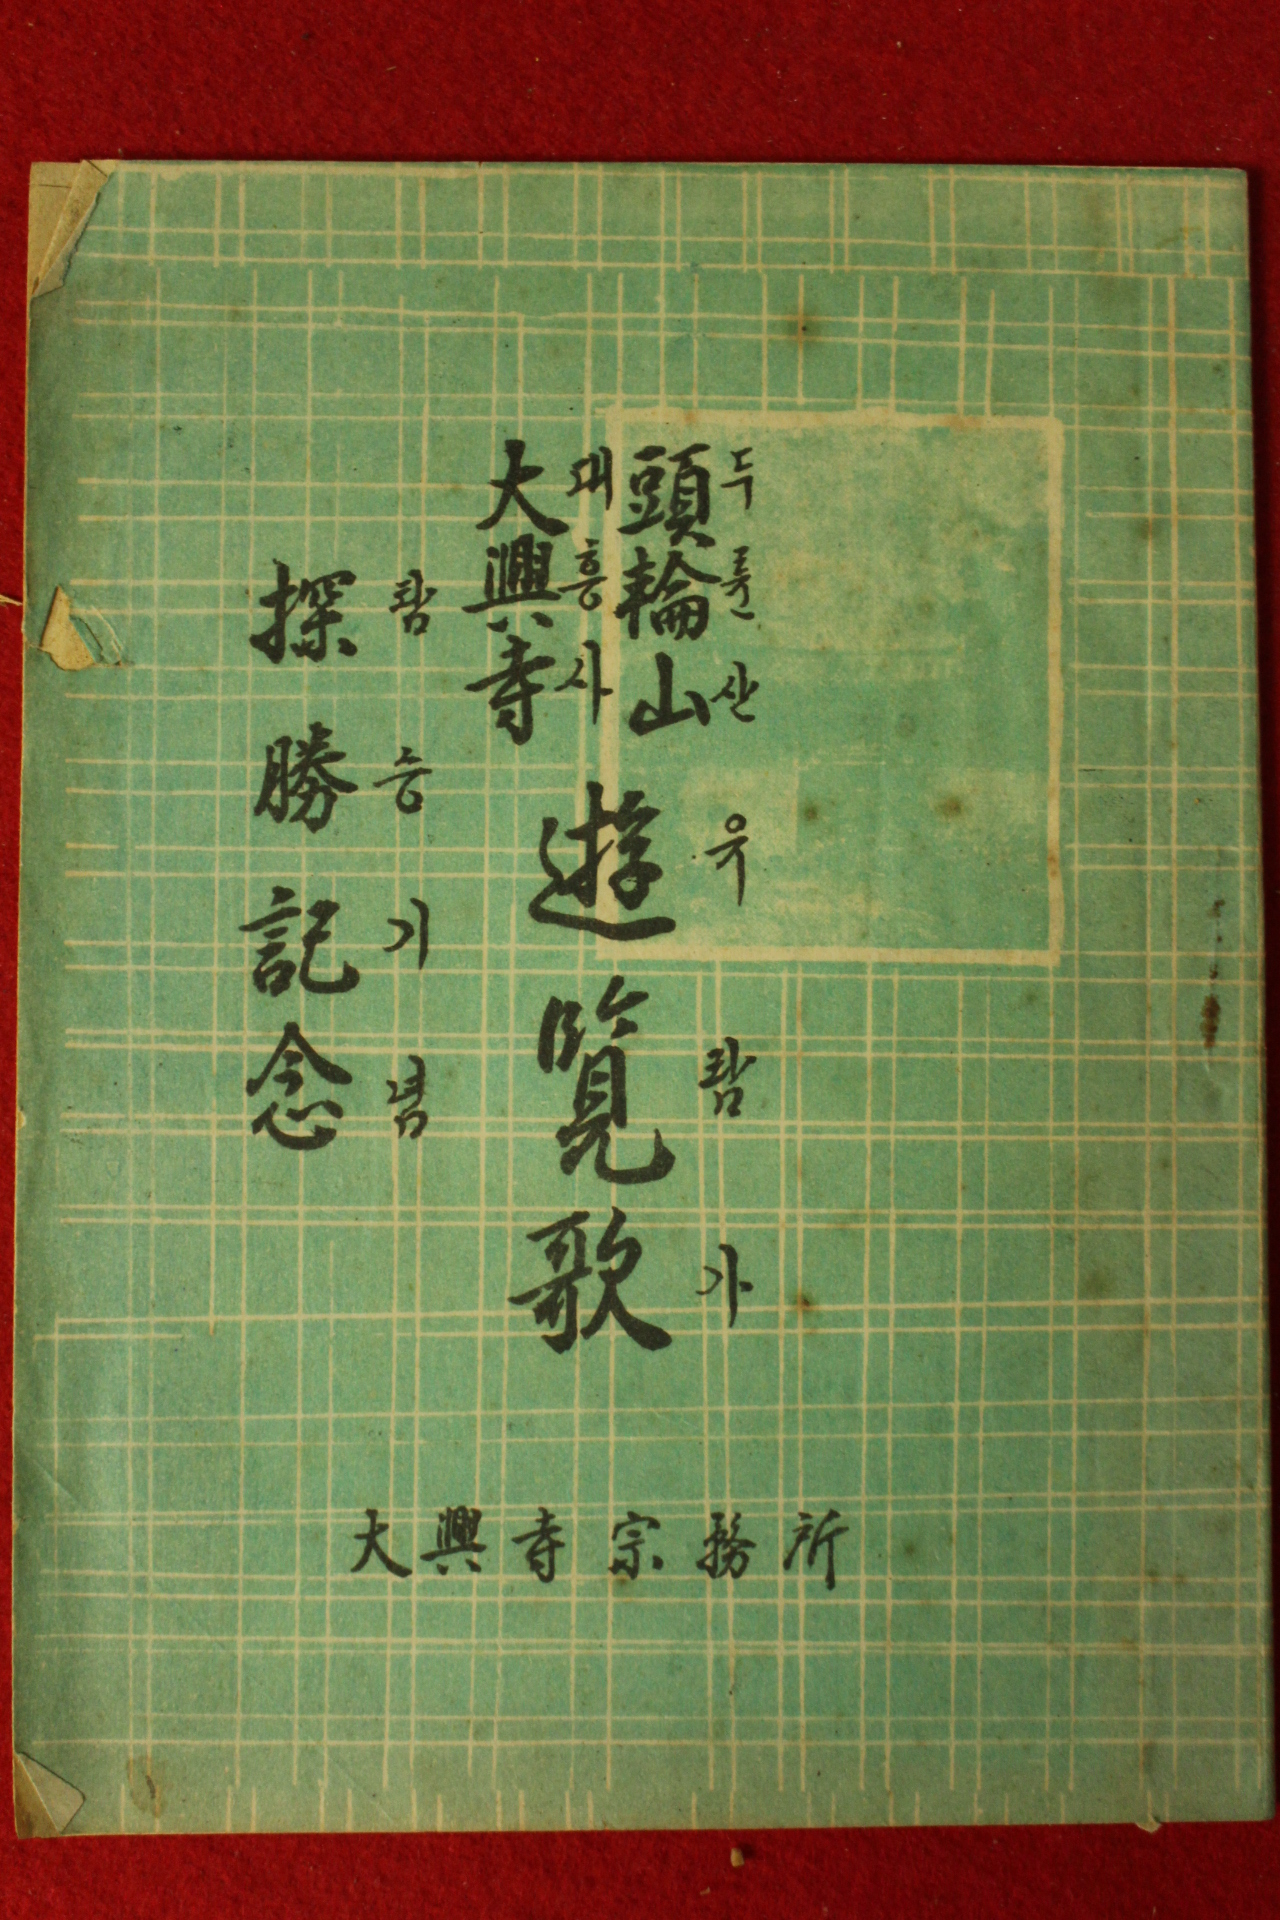 1948년 목포 조선옵션인쇄소간행 두륜산유람가(頭輪山遊覽歌)